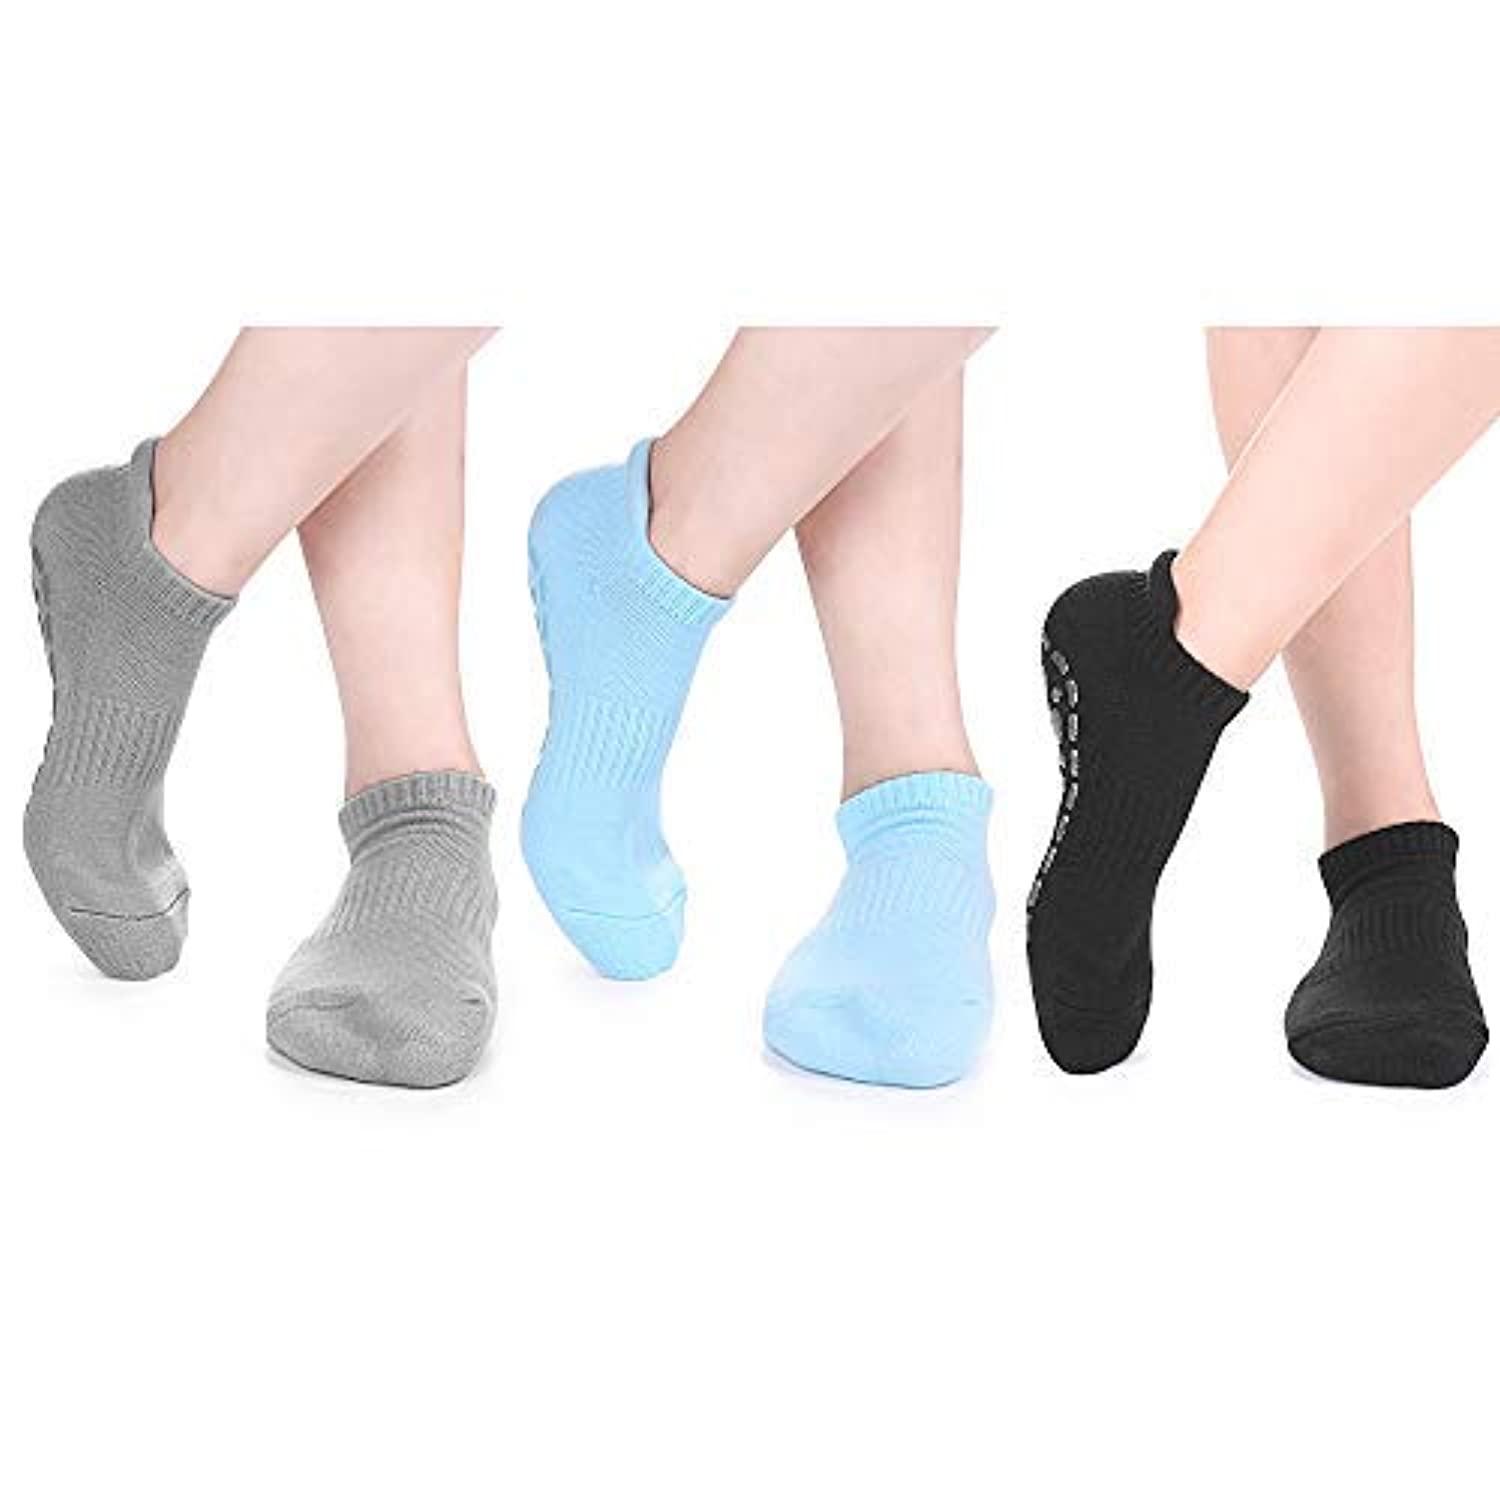 Artfasion Calcetines de pilates con empuñaduras para mujer, calcetines de  yoga antideslizantes para ballet, barre en casa, hospital, 3 pares